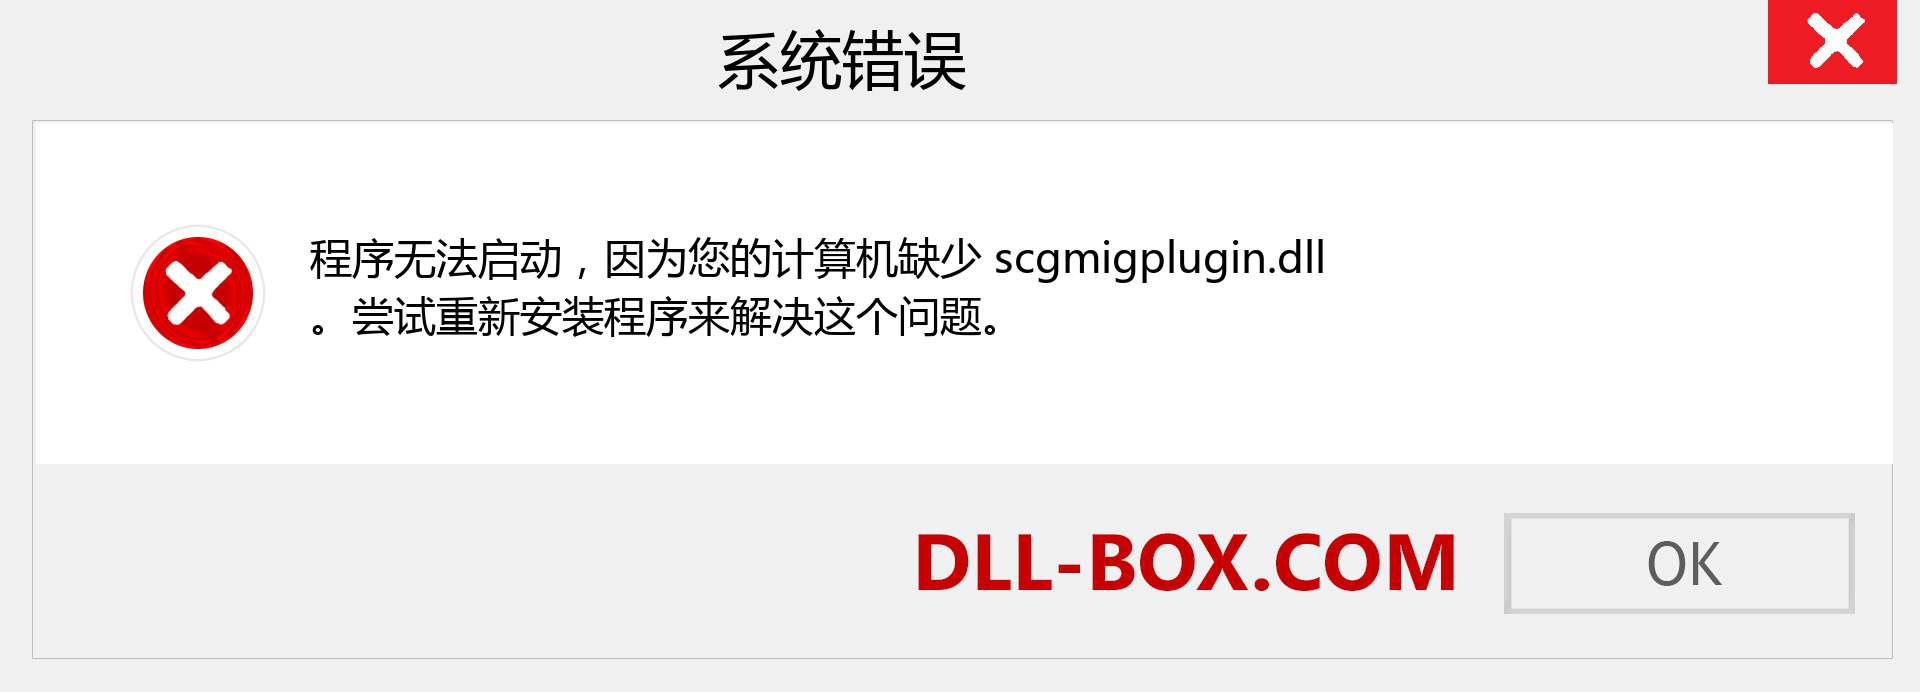 scgmigplugin.dll 文件丢失？。 适用于 Windows 7、8、10 的下载 - 修复 Windows、照片、图像上的 scgmigplugin dll 丢失错误